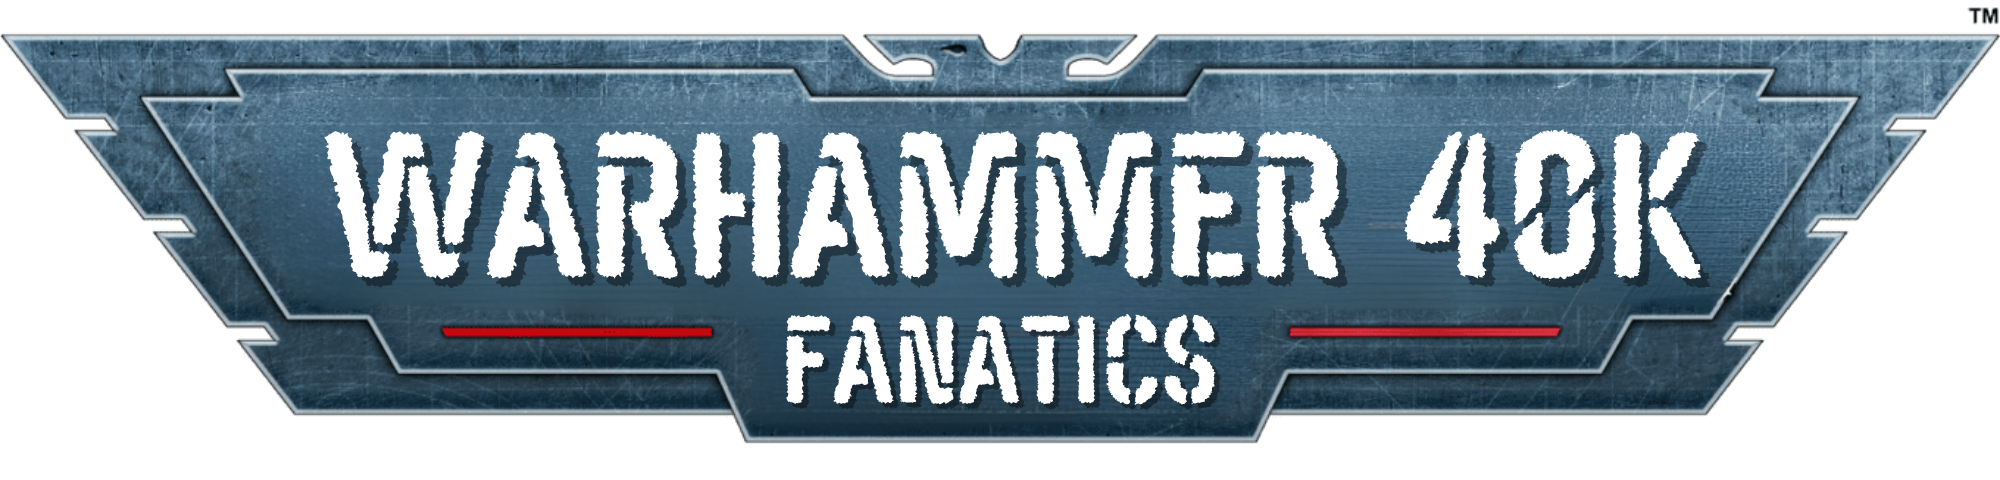 Warhammer 40K Fanatics